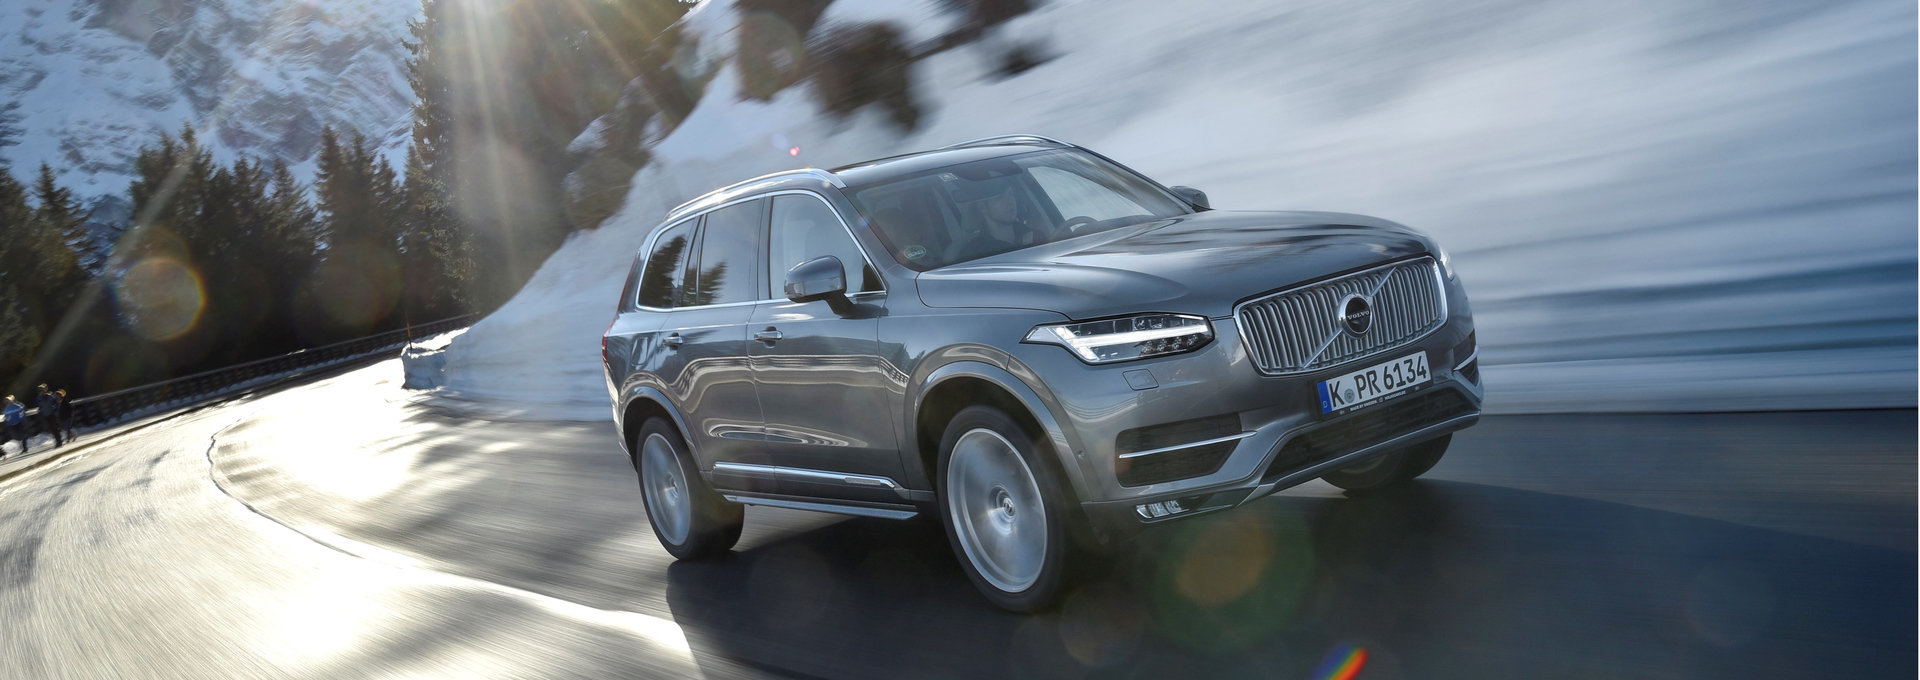 Volvo демонстрирует высокие результаты в рейтингах сохранности остаточной стоимости